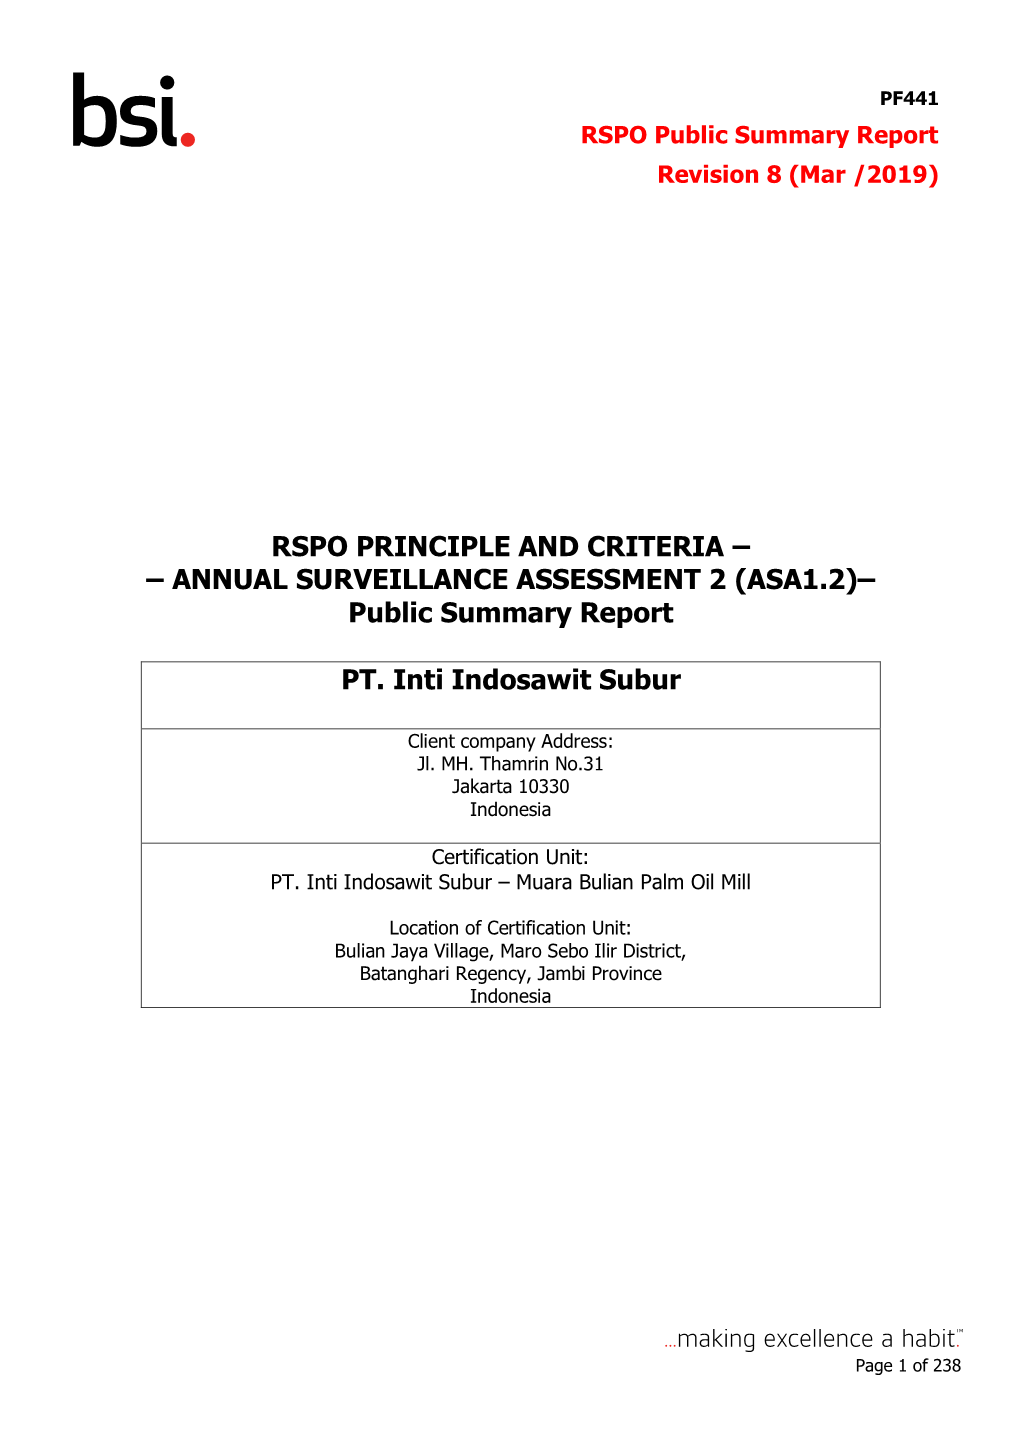 Public Summary Report PT. Inti Indosawit Subur